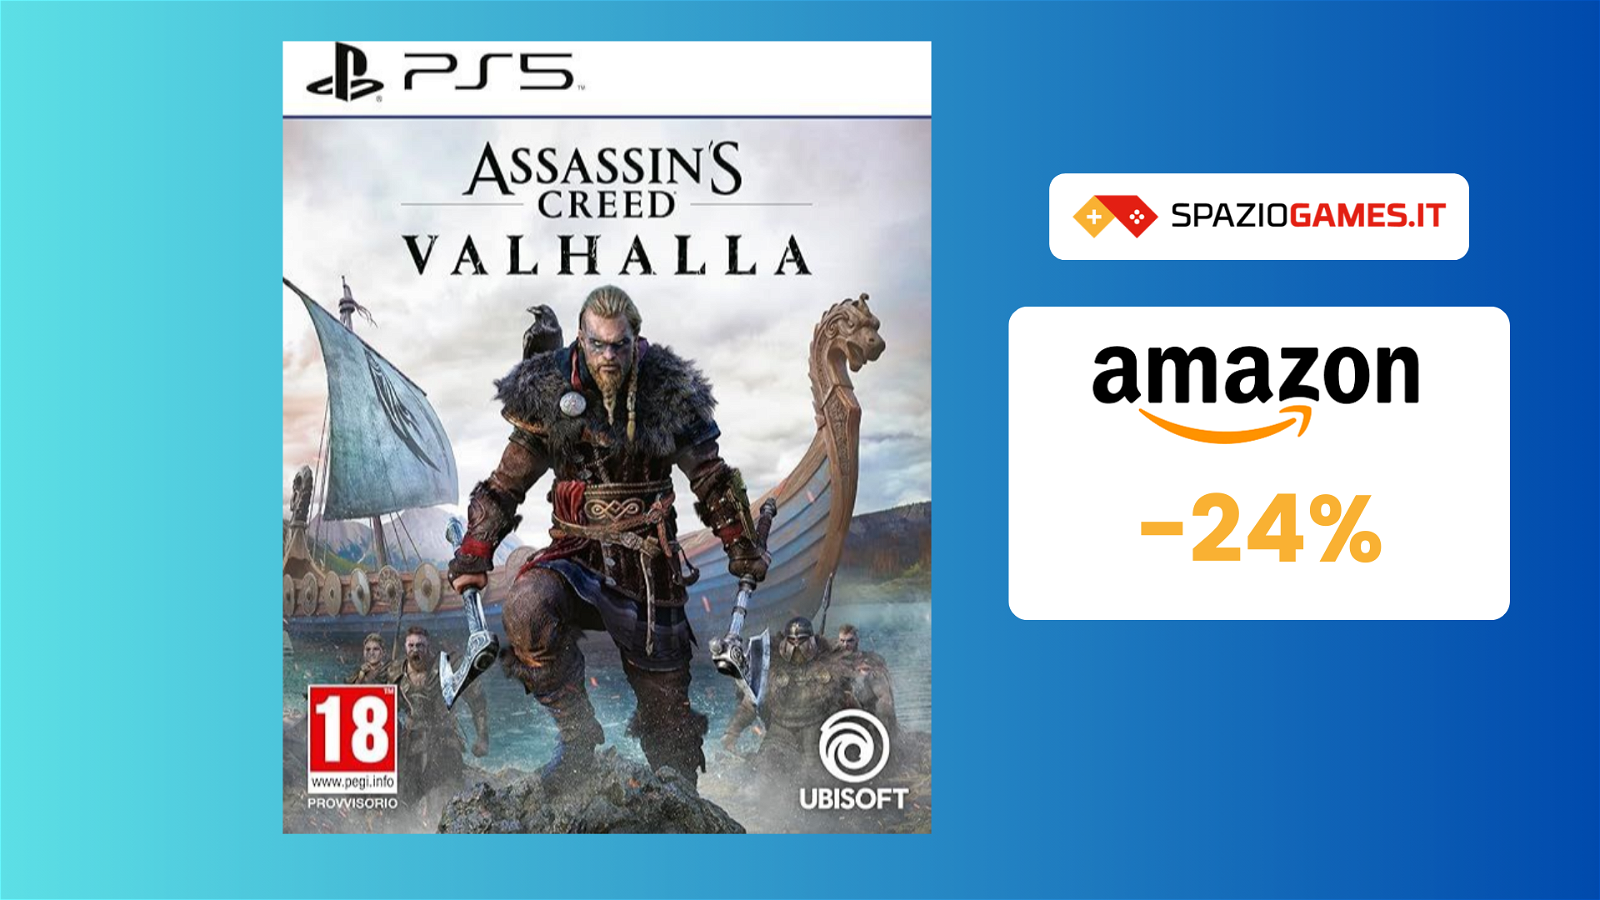 Assassin's Creed Valhalla per PS5 a 22€ per vivere da vichingo!